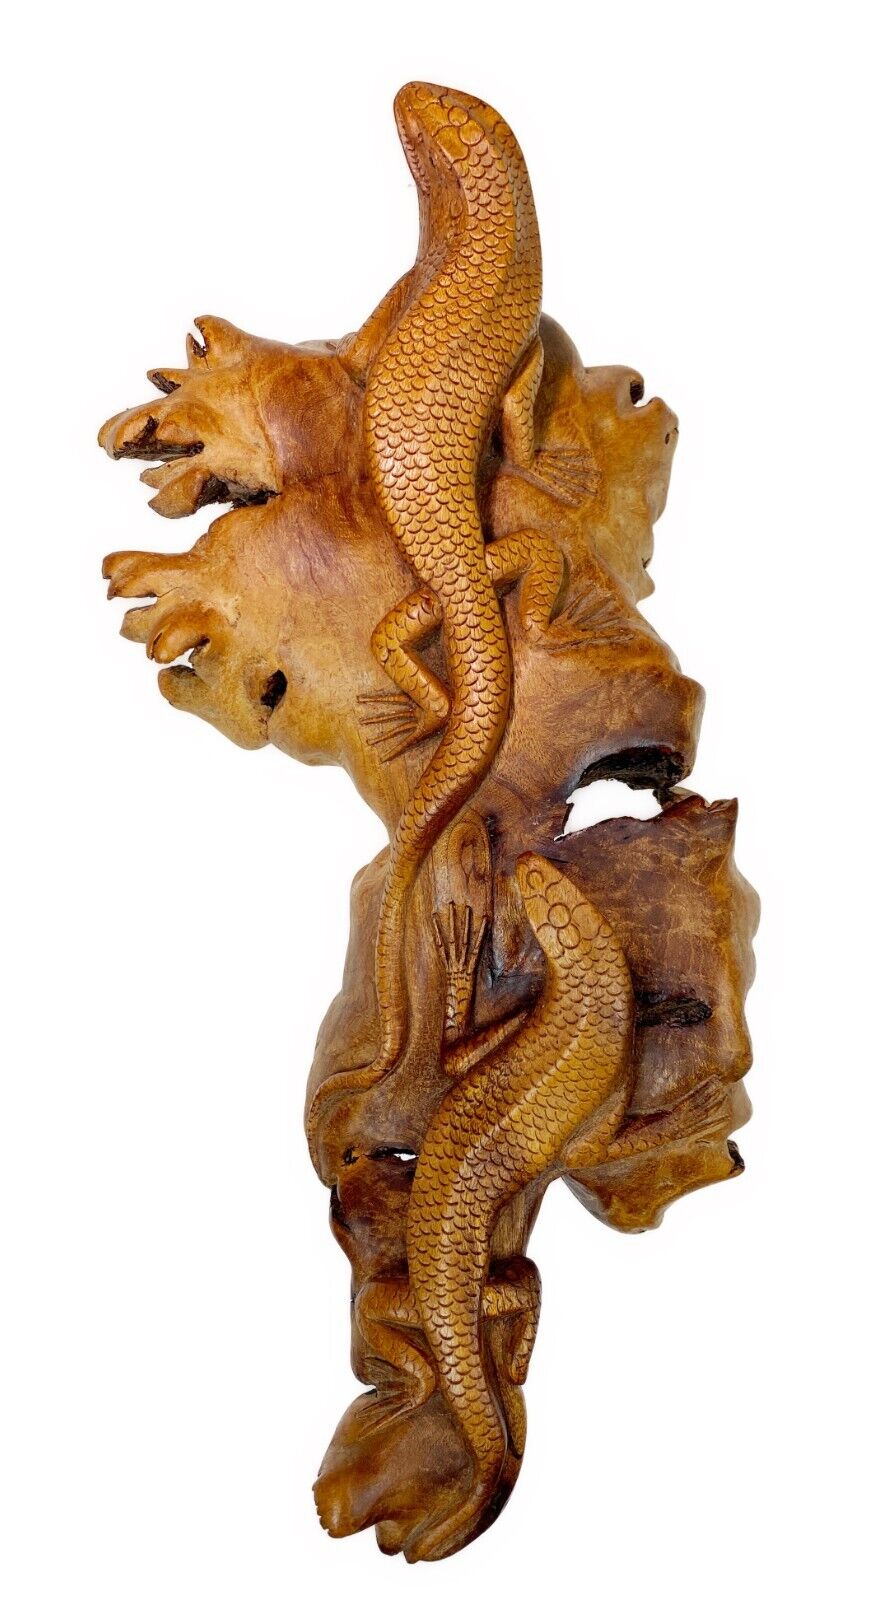 Carved Burl Wood 2 Lizard Reptile Sculpture Figurine Indonesia H4” x L14” x 6”